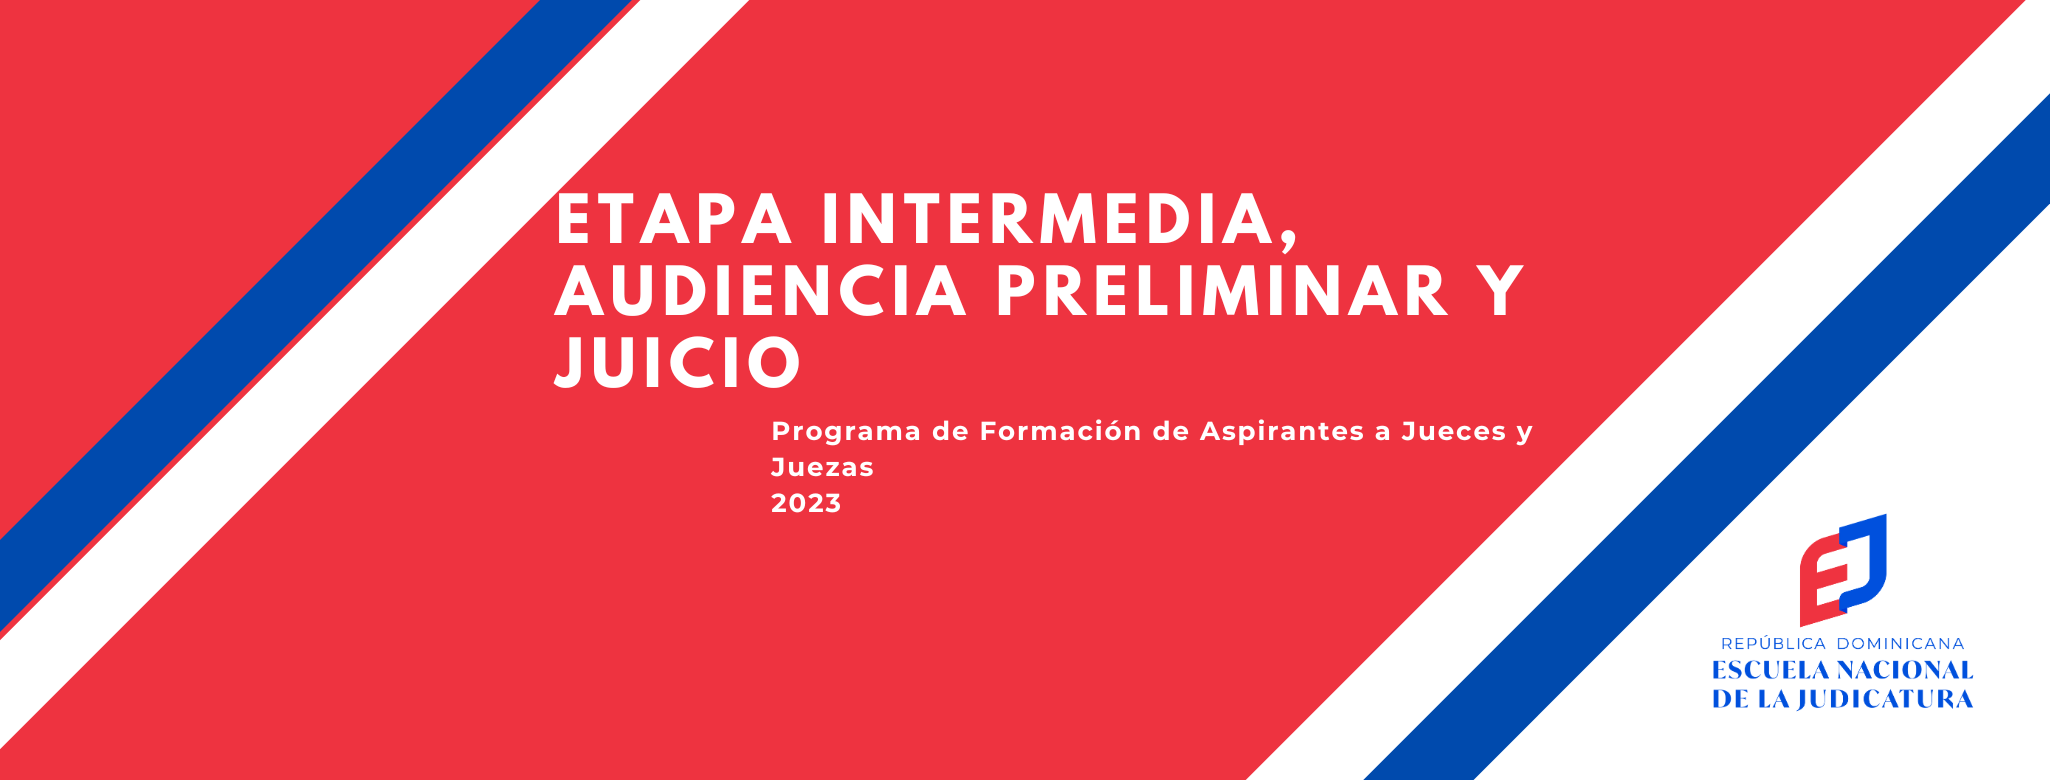 MDJ-303-24-01 Etapa Intermedia Audiencia Preliminar y Juicio